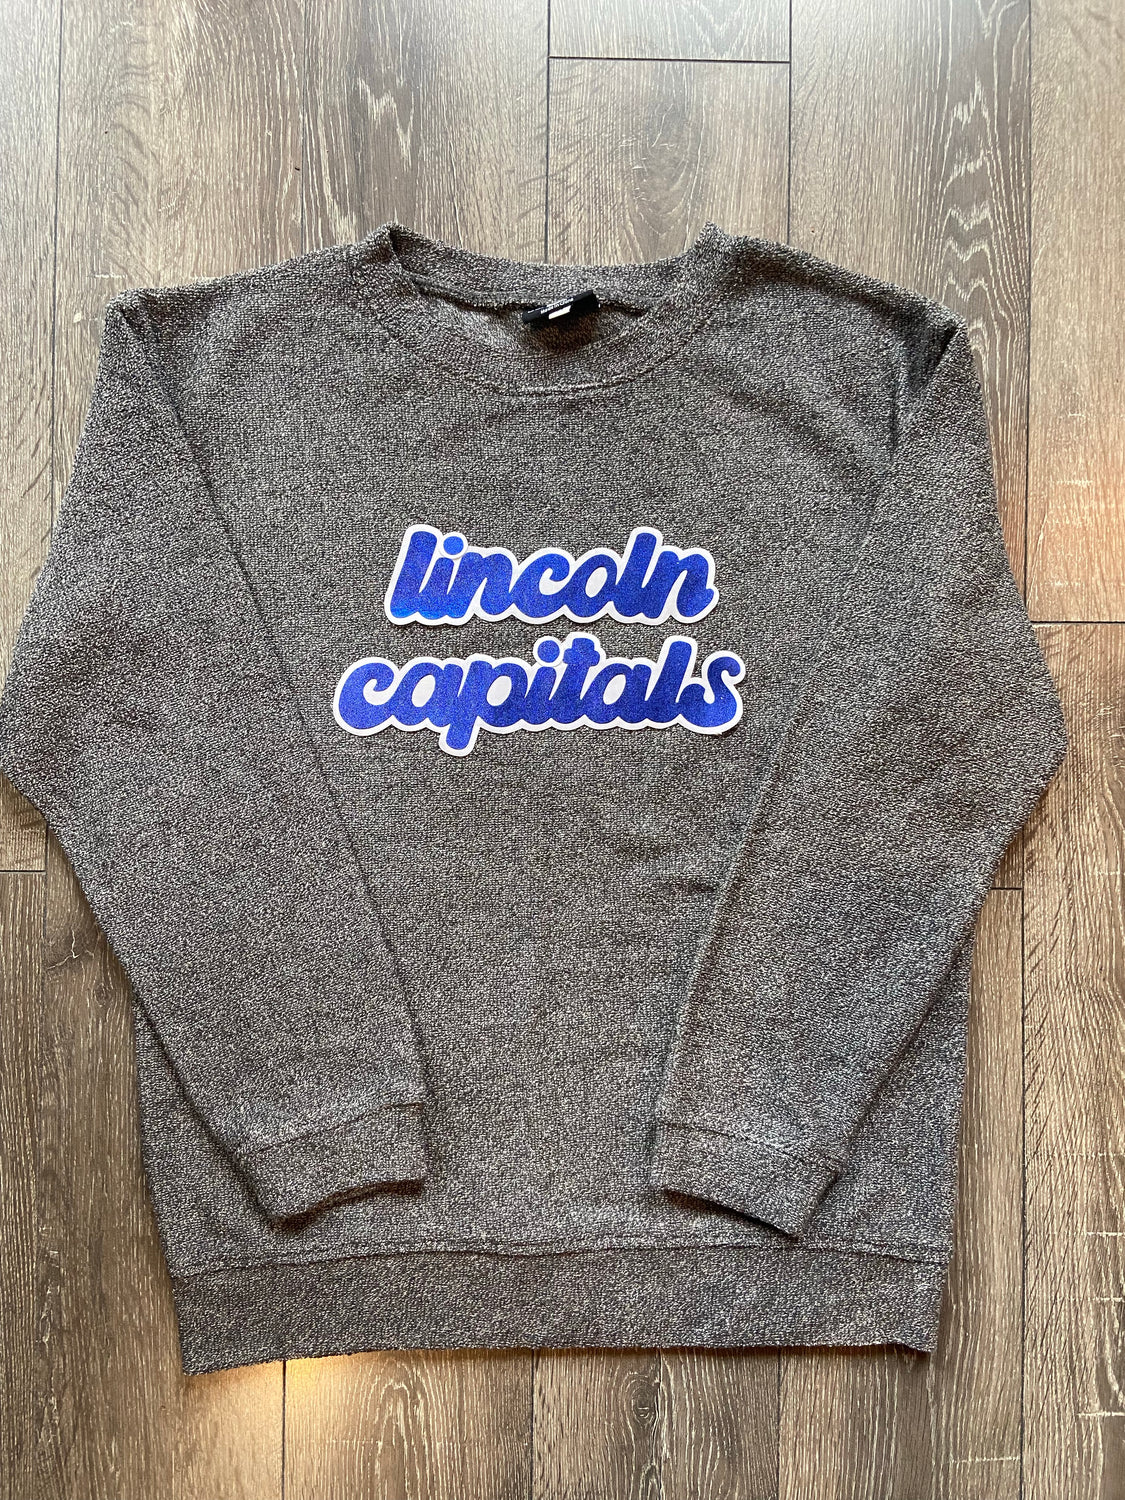 LINCOLN CAPITALS - GREY COZY CREW